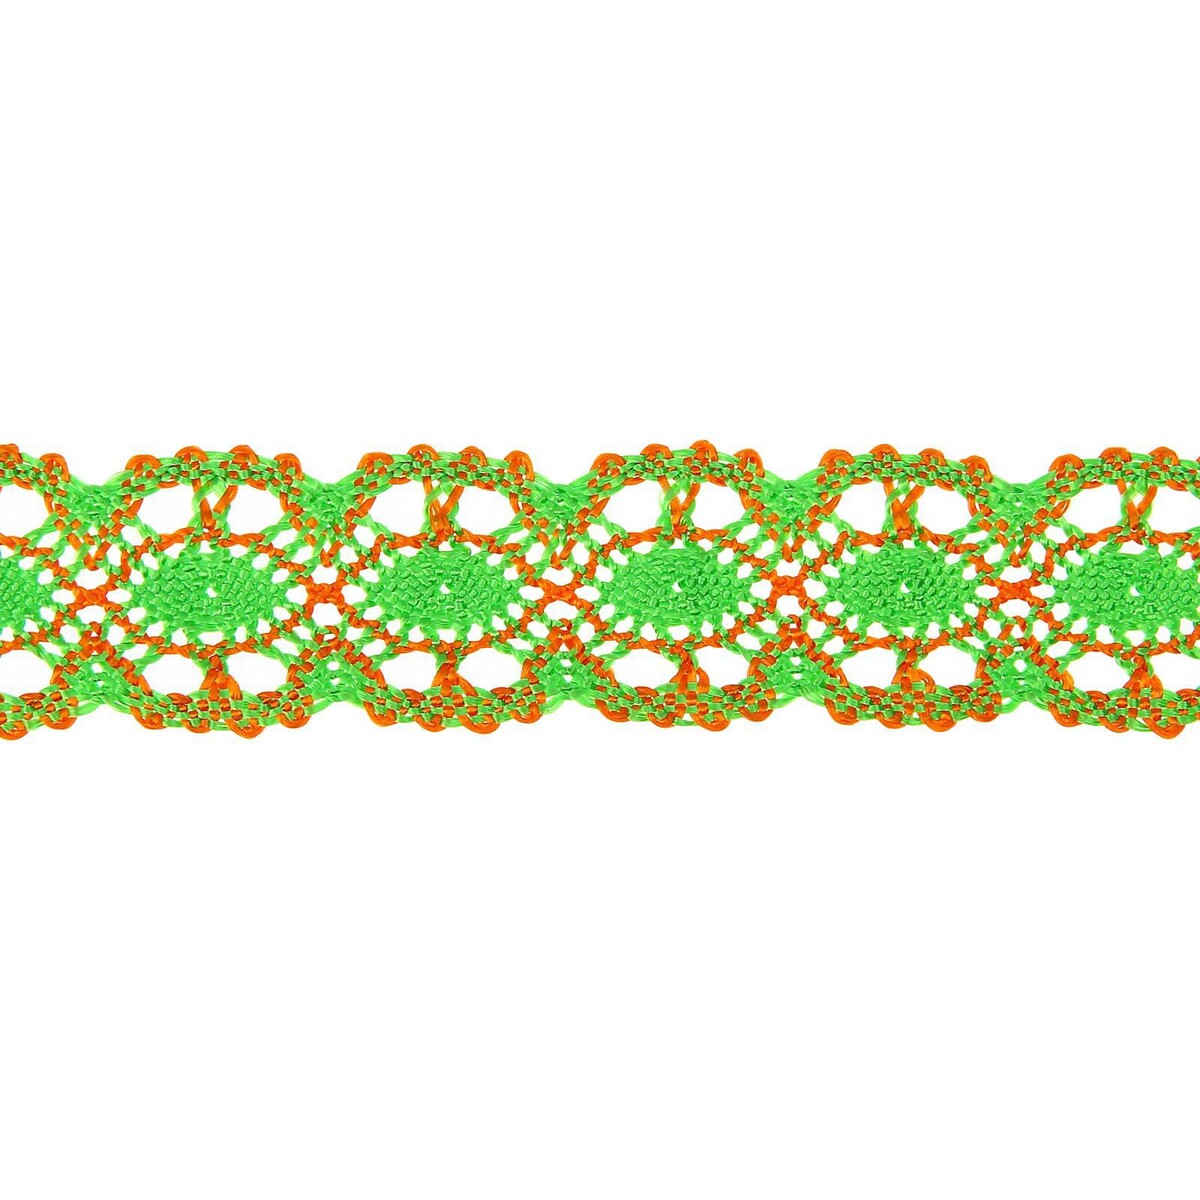 Тесьма плетеная оранжево-зеленая в рулоне 20 метров калька чертежная под карандаш ширина 420 мм в рулоне 10 метров 40 г м² в пп пленке